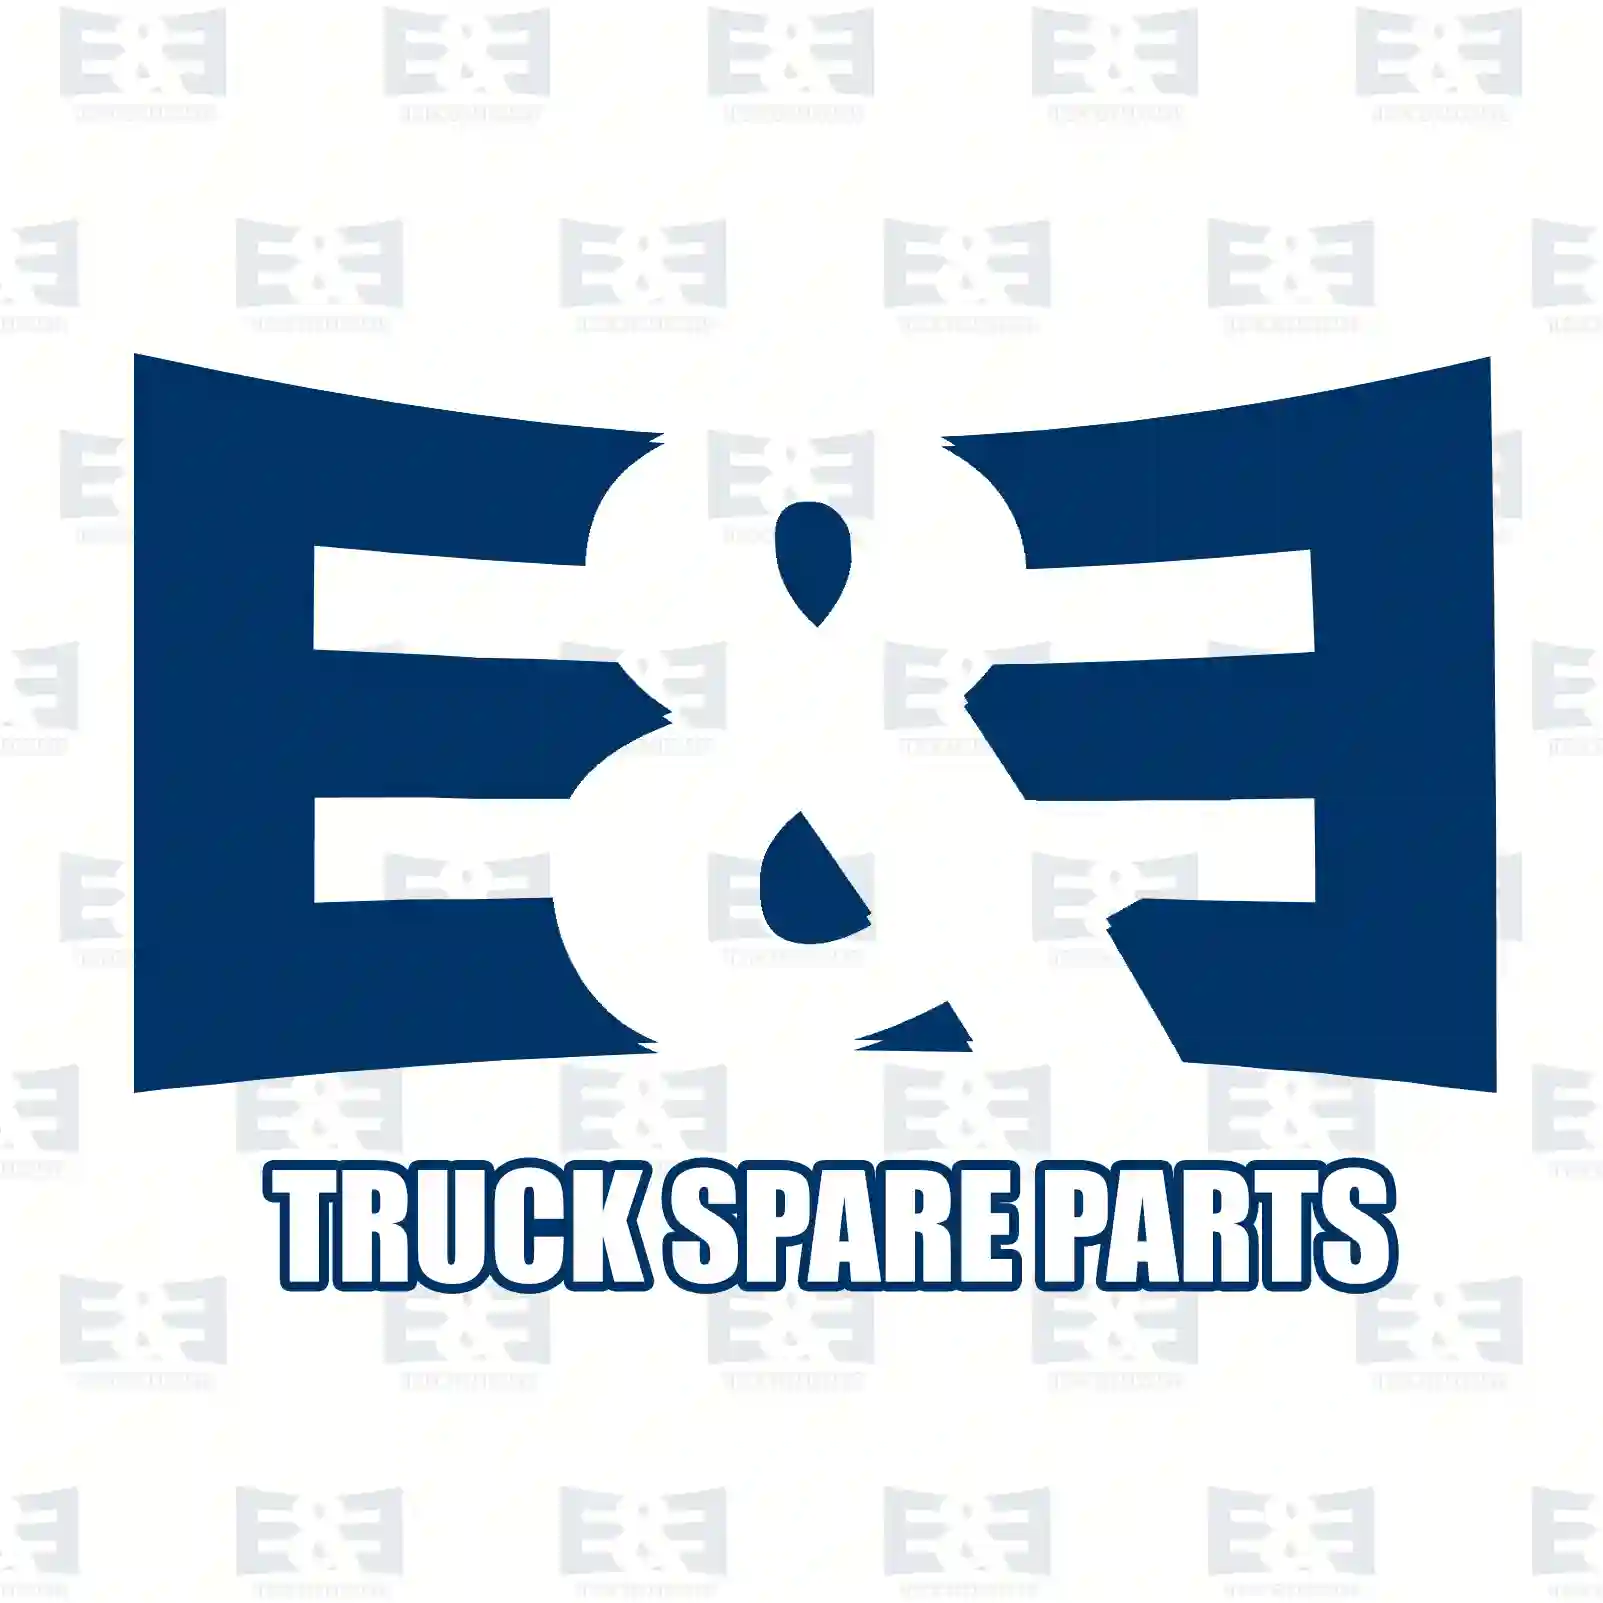 Bushing, release fork, 2E2279413, 81930210426, 07W141327, ZG30244-0008 ||  2E2279413 E&E Truck Spare Parts | Truck Spare Parts, Auotomotive Spare Parts Bushing, release fork, 2E2279413, 81930210426, 07W141327, ZG30244-0008 ||  2E2279413 E&E Truck Spare Parts | Truck Spare Parts, Auotomotive Spare Parts